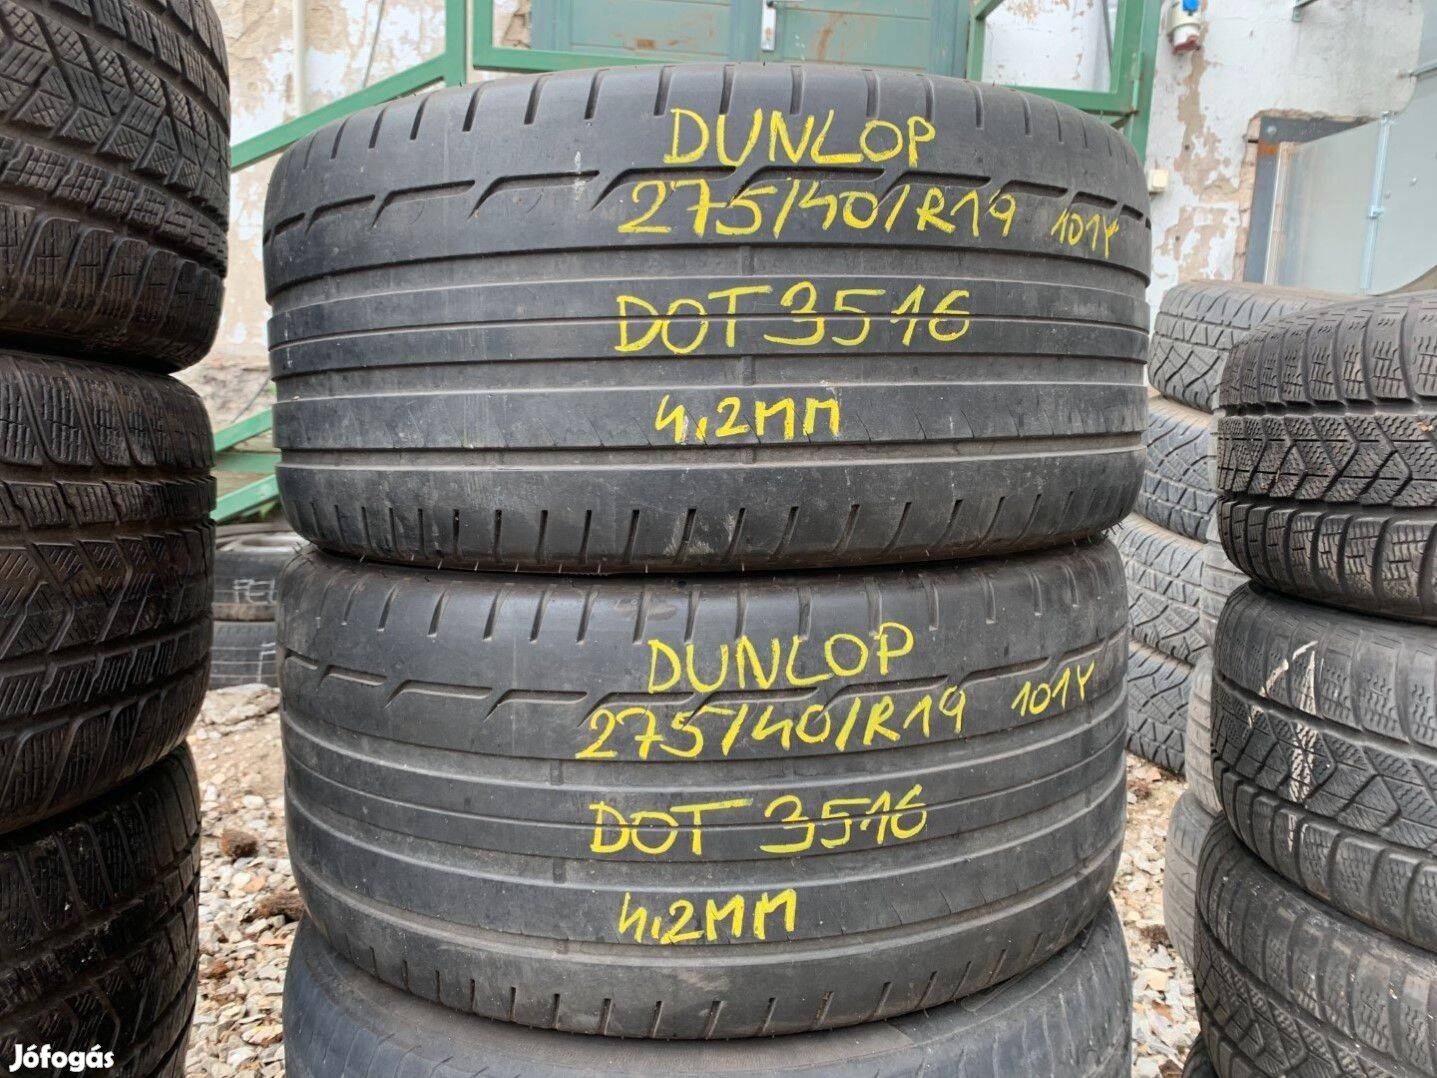 R19 275/40 Dunlop 2x4.5mm DOT4316 2db Nyári gumik Gumiszerelés is